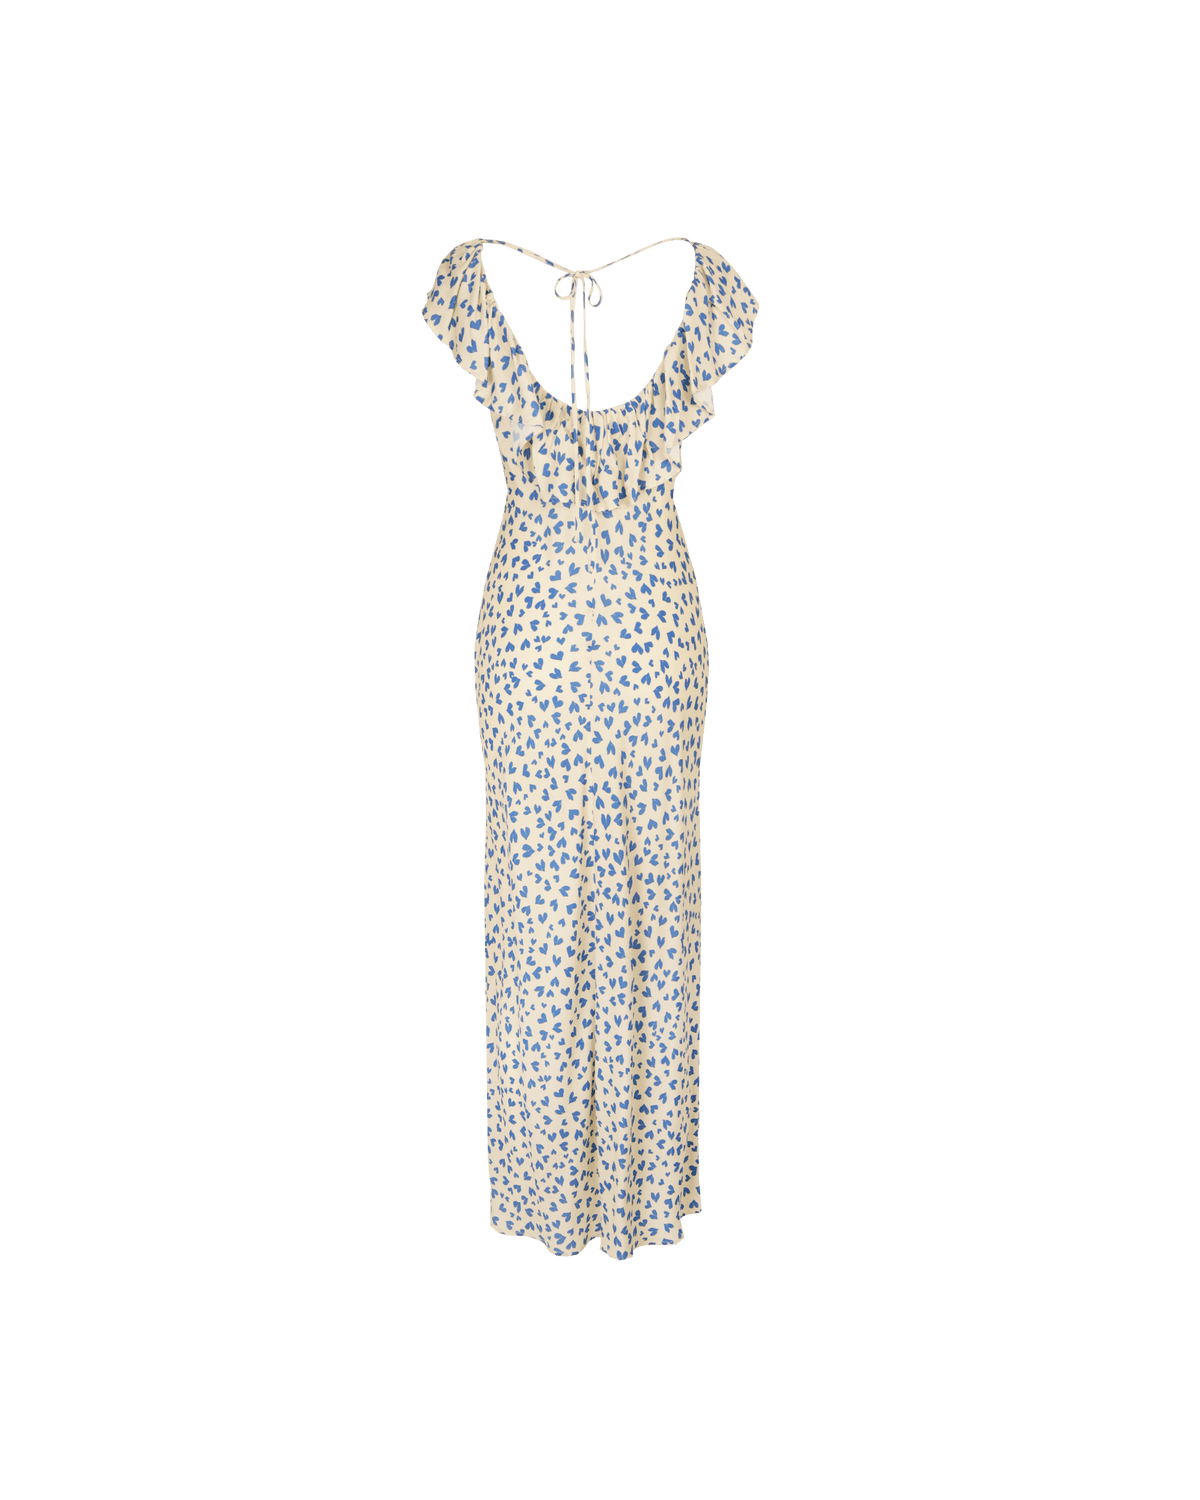 Hazel Ruffle Dress - Blue Scatter Hearts Dresses Ruby 